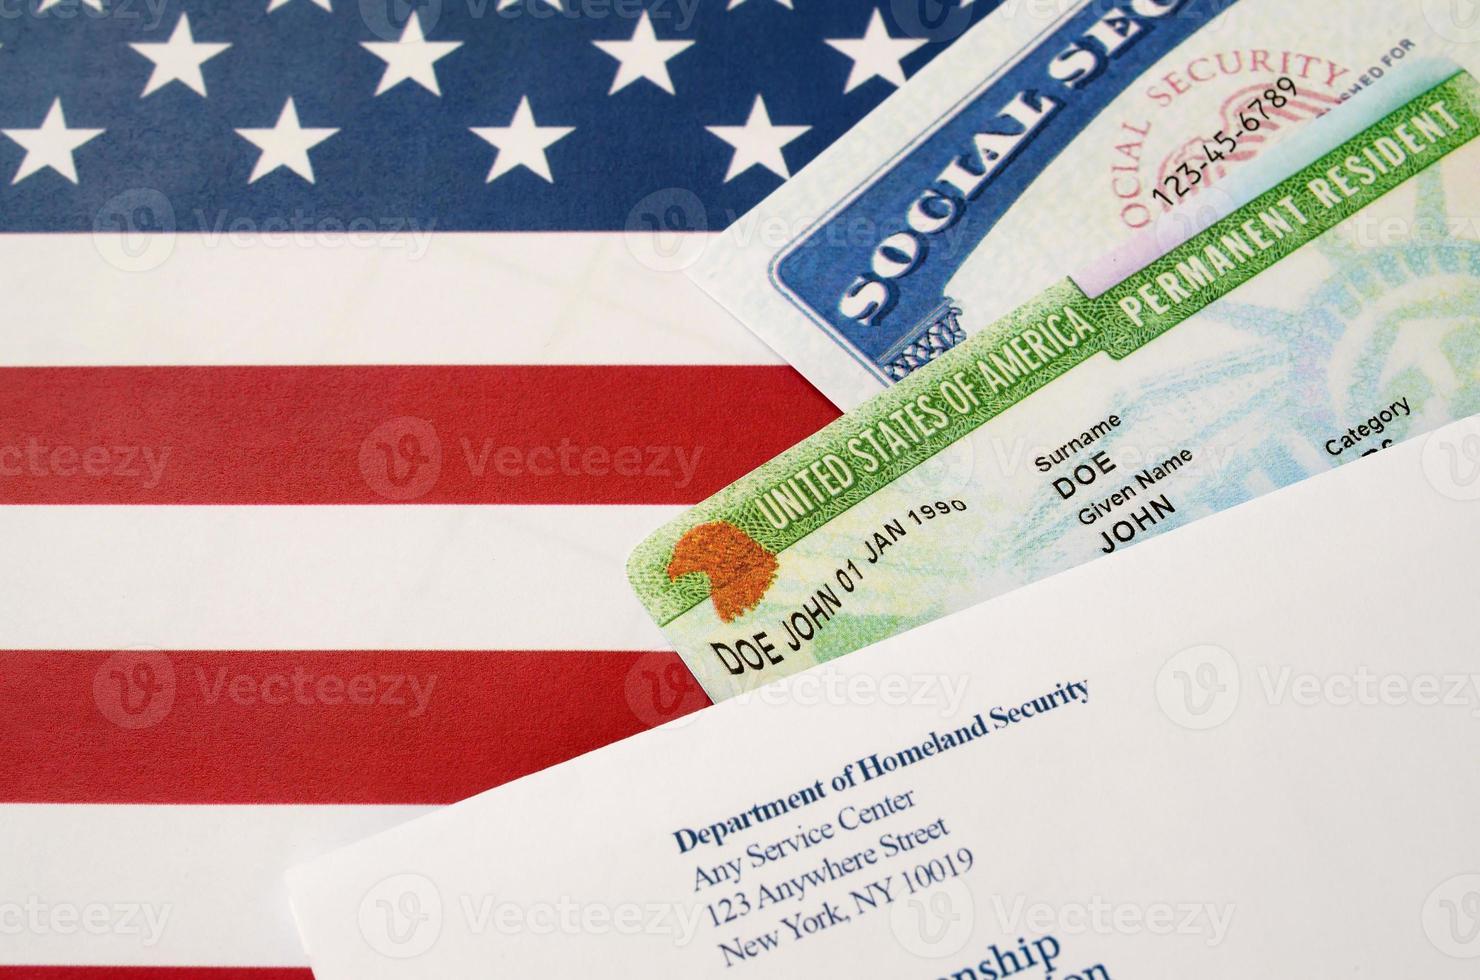 cartão verde de residente permanente dos estados unidos da dv-lottery com número de segurança social encontra-se com envelope uscis na bandeira dos eua foto